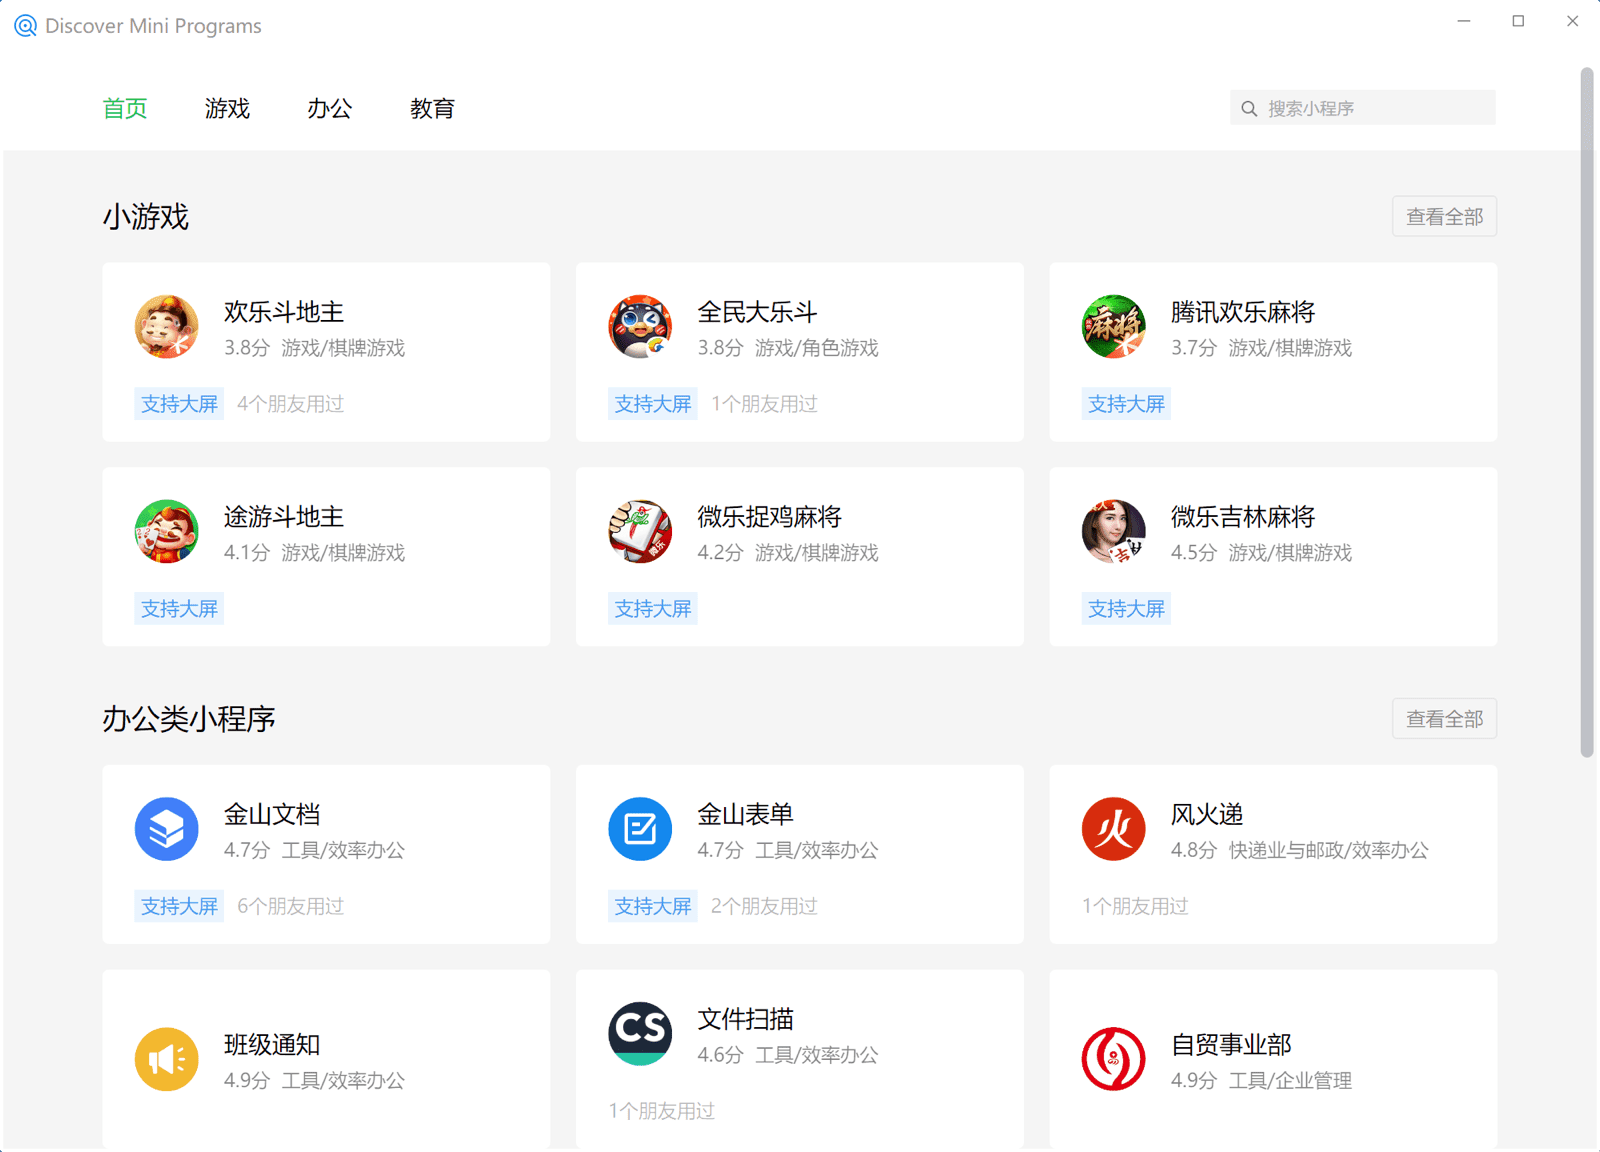 WeChat Windows क्लाइंट में मिनी ऐप्लिकेशन खोज, जिसमें गेम, कारोबार, शिक्षा वगैरह जैसी कई कैटगरी में लिस्ट किए गए मिनी ऐप्लिकेशन दिखाए गए हैं.